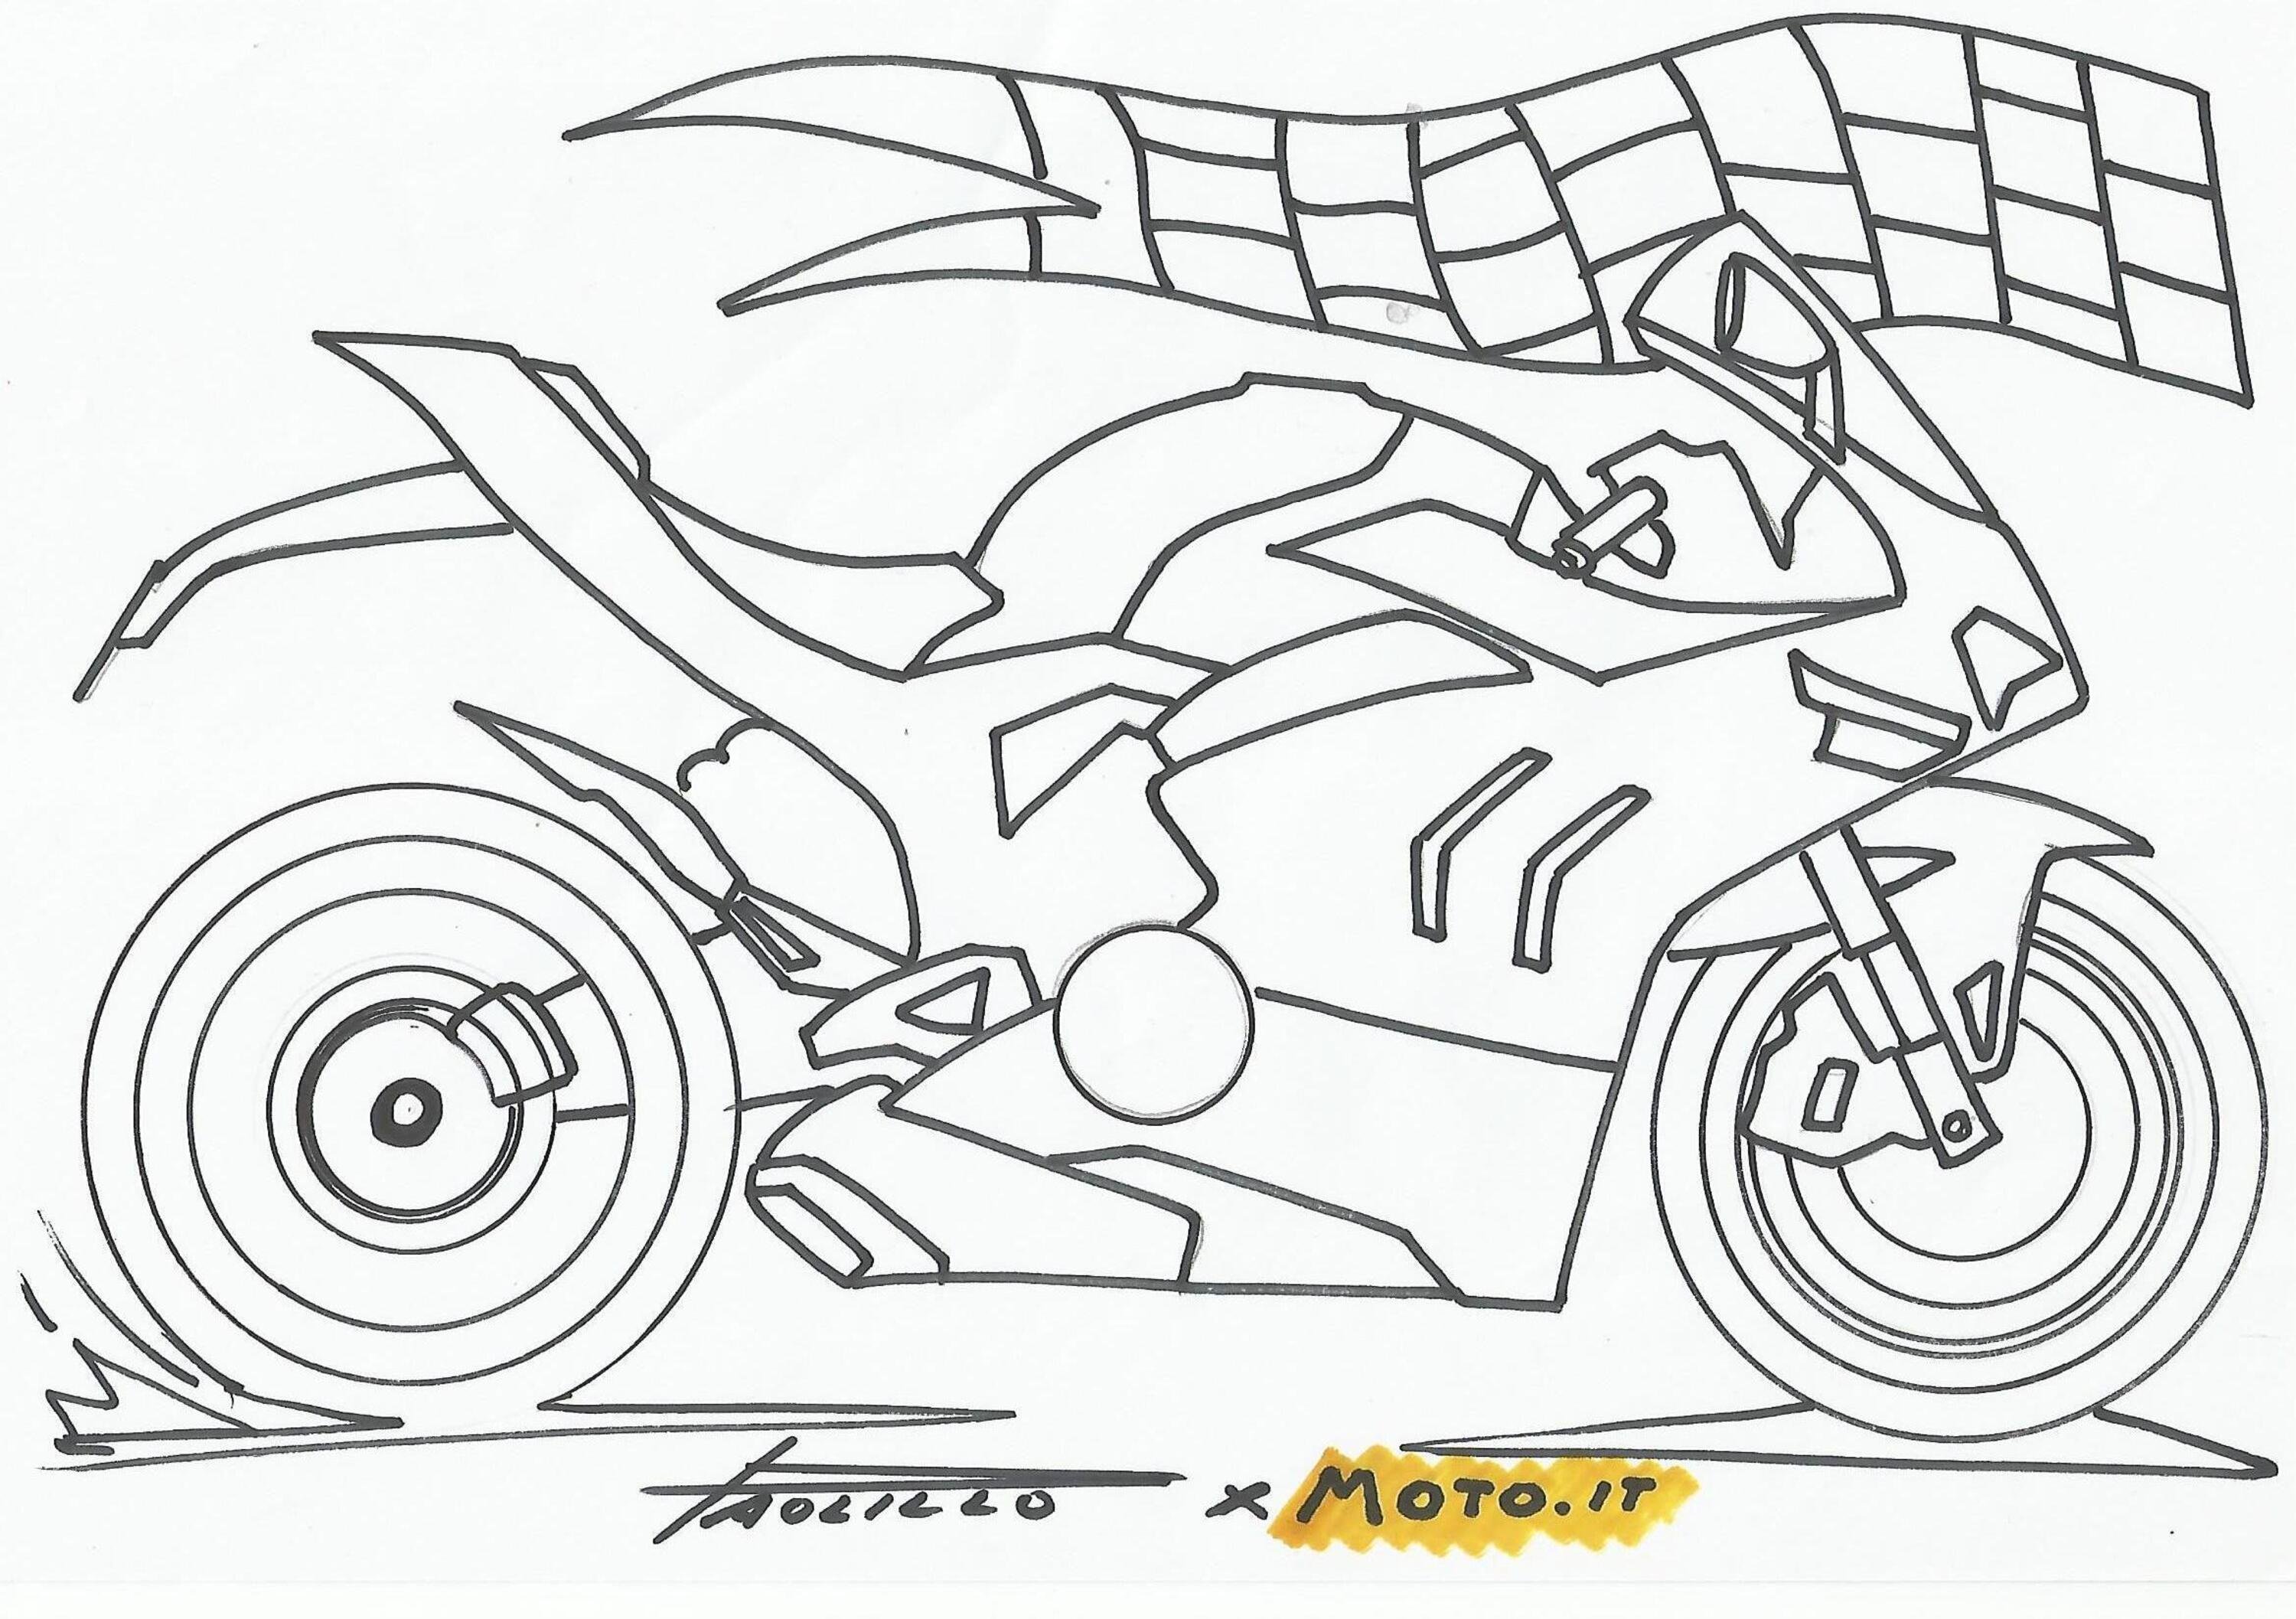 #coloralapassione - Le moto da stampare e colorare: Ducati Panigale V4